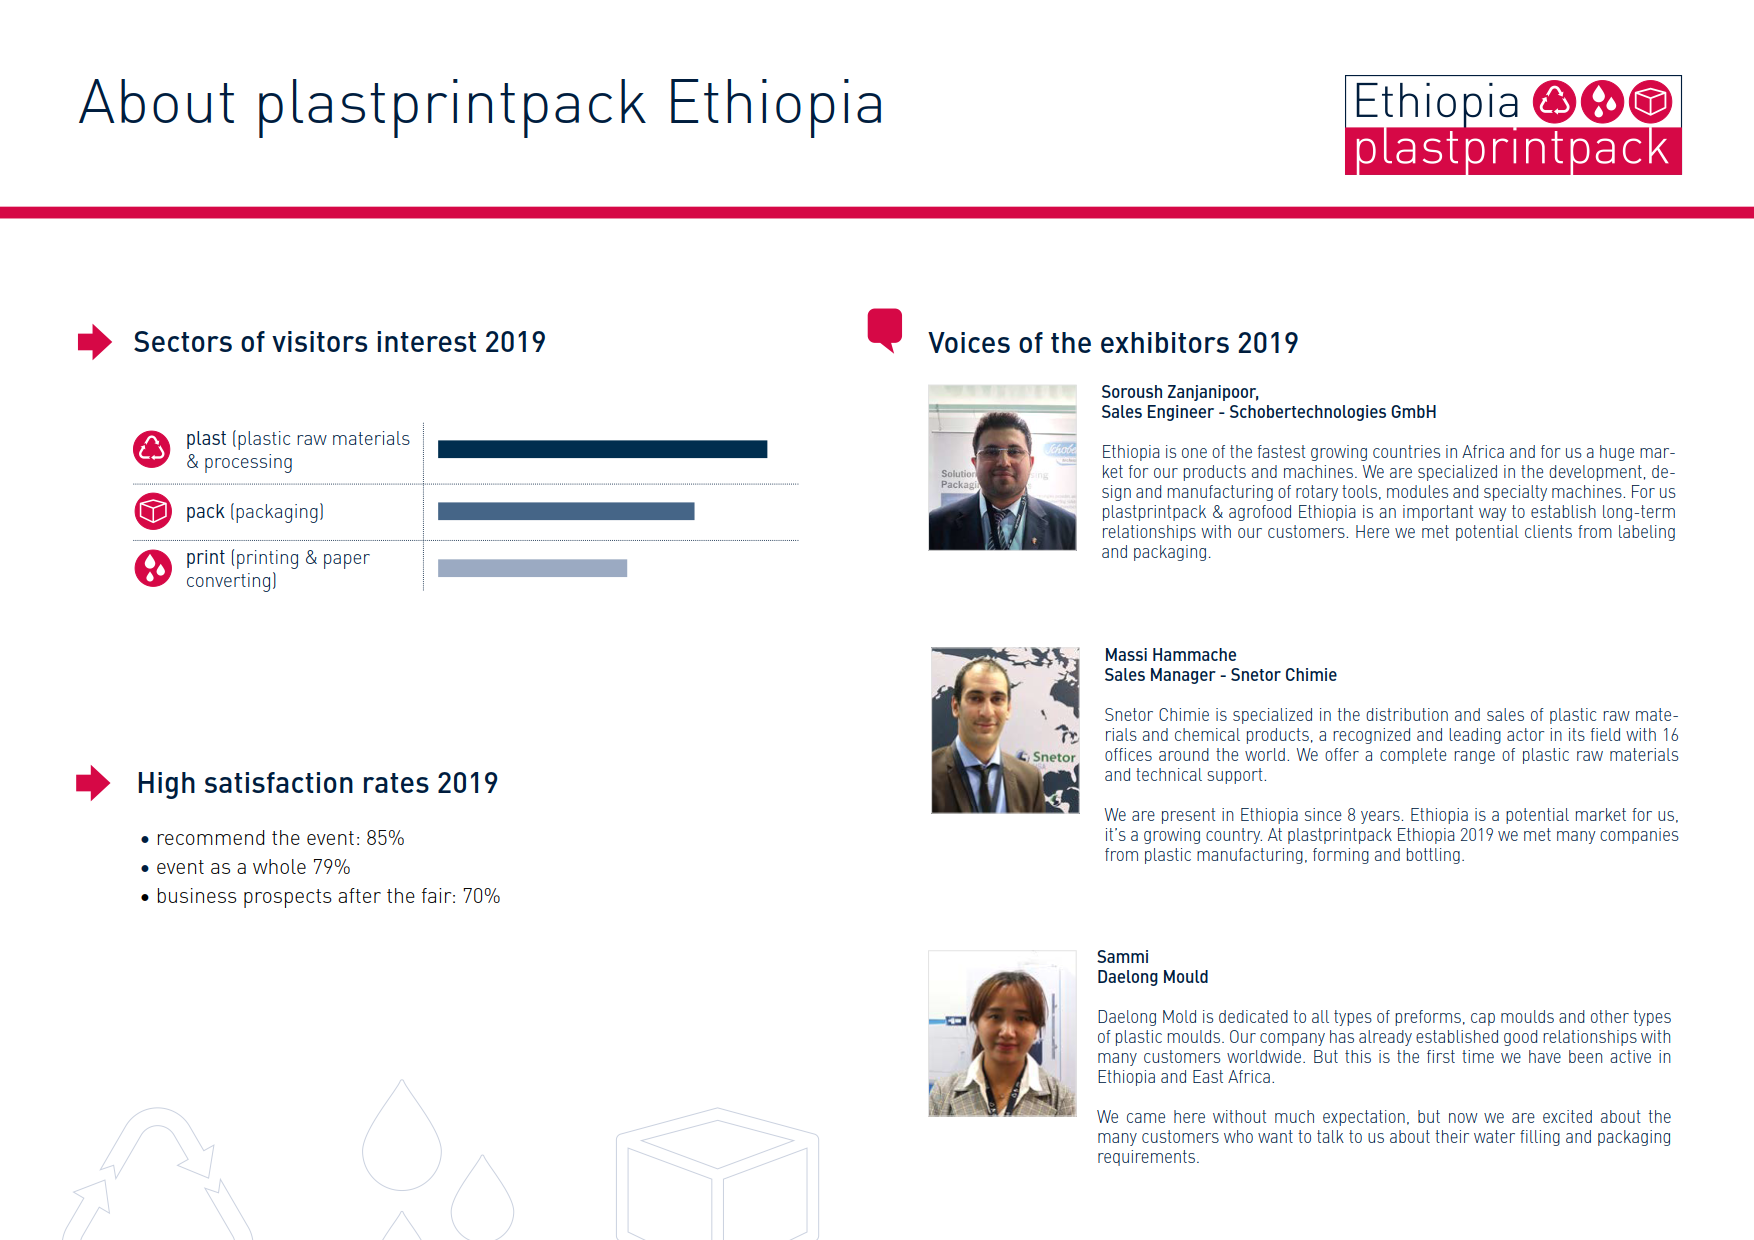 埃塞俄比亚塑料包装展览会PPP Ethiopia